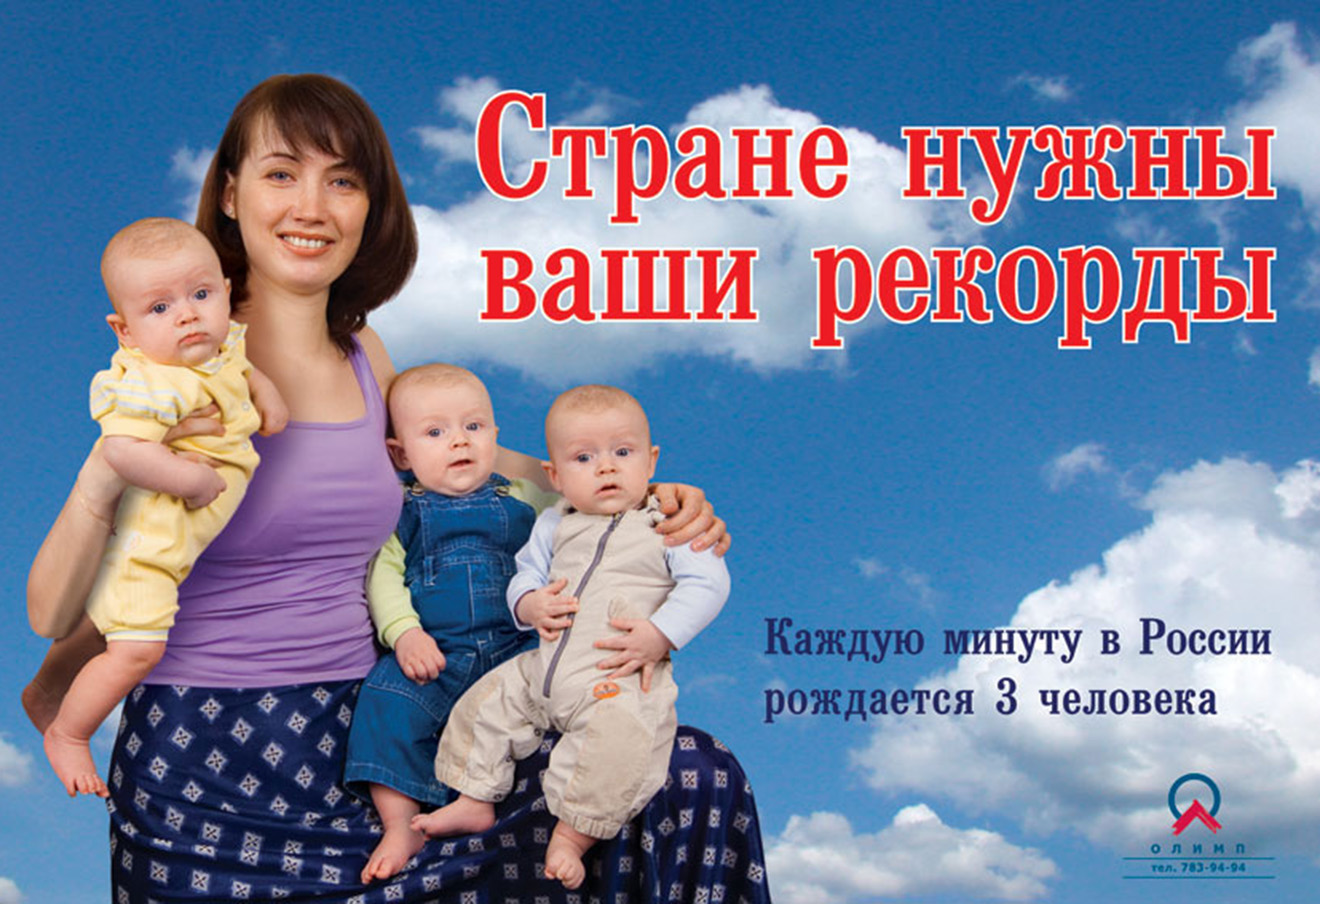 Российская социальная реклама. Стране нужны ваши рекорды. Социальная реклама. Стране нужны ваши рекорды плакат. Социальная реклама в России.